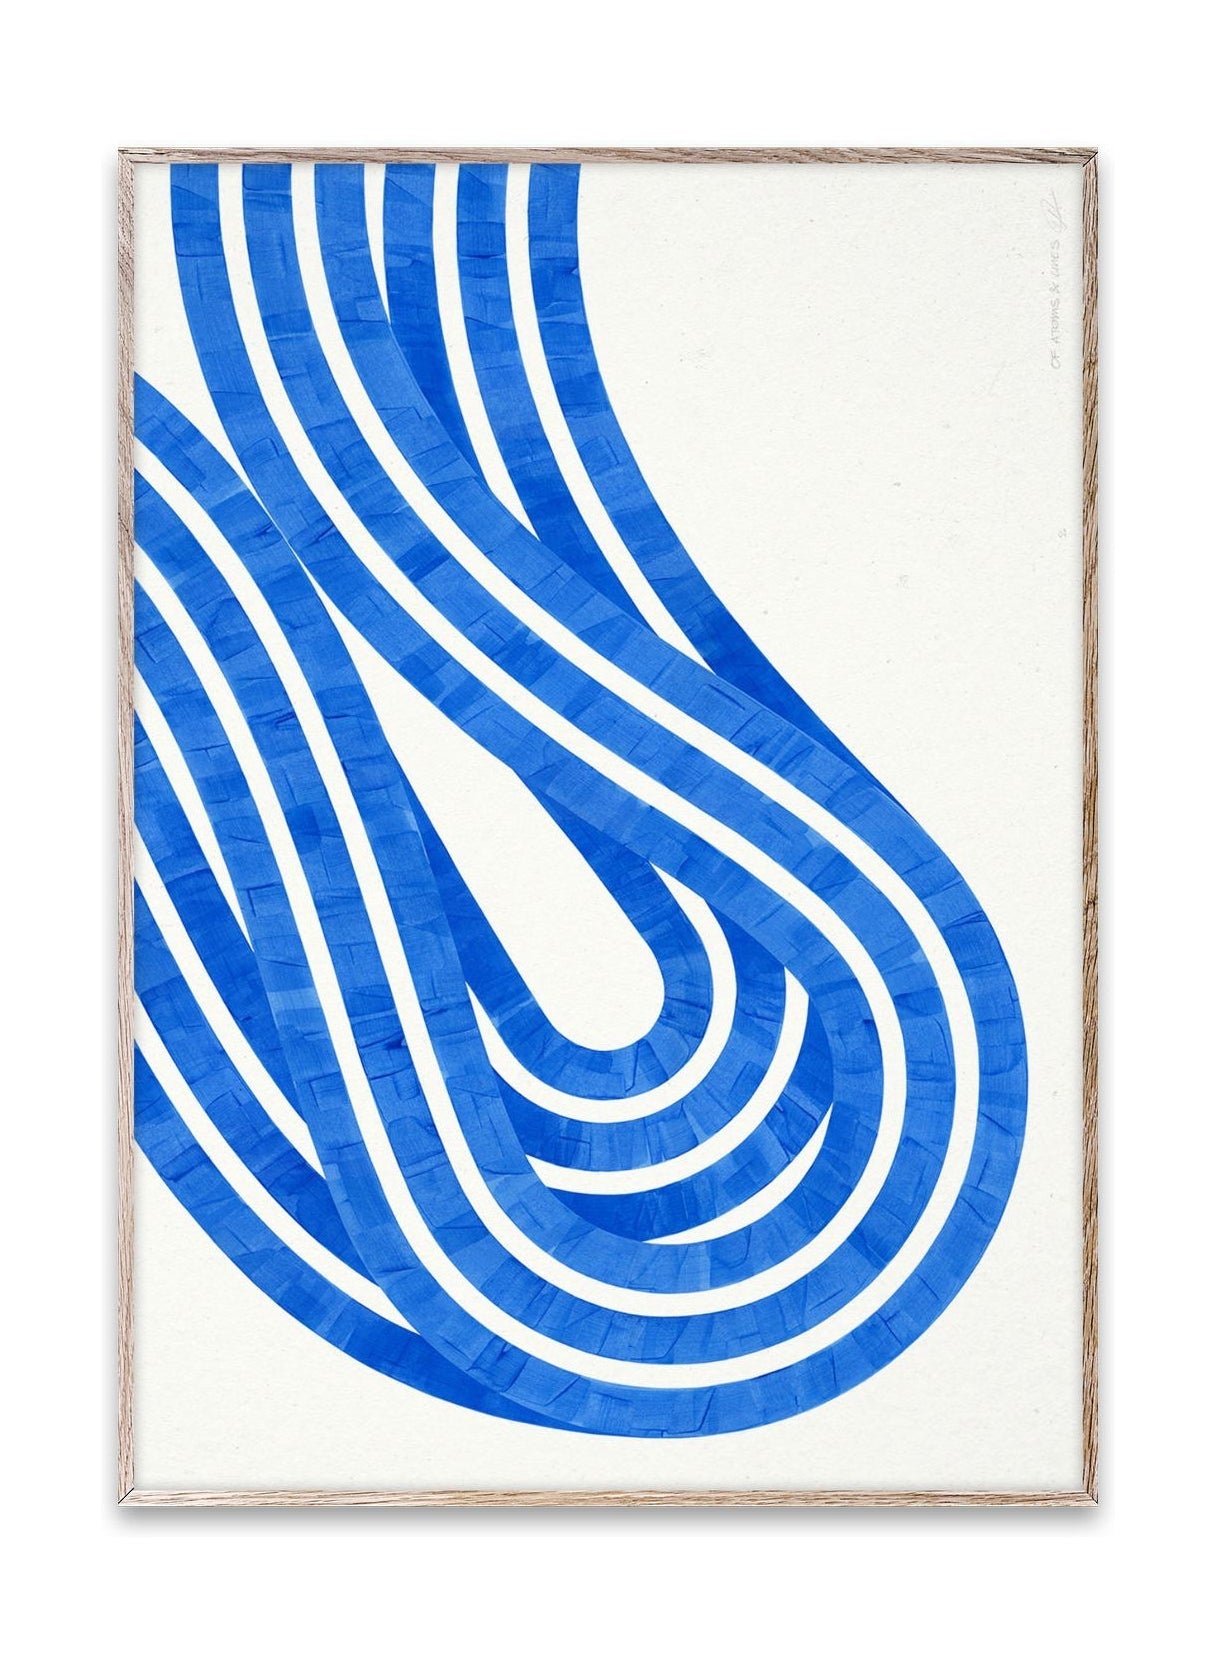 Papirkollektiv entropi blå 02 plakat, 30x40 cm